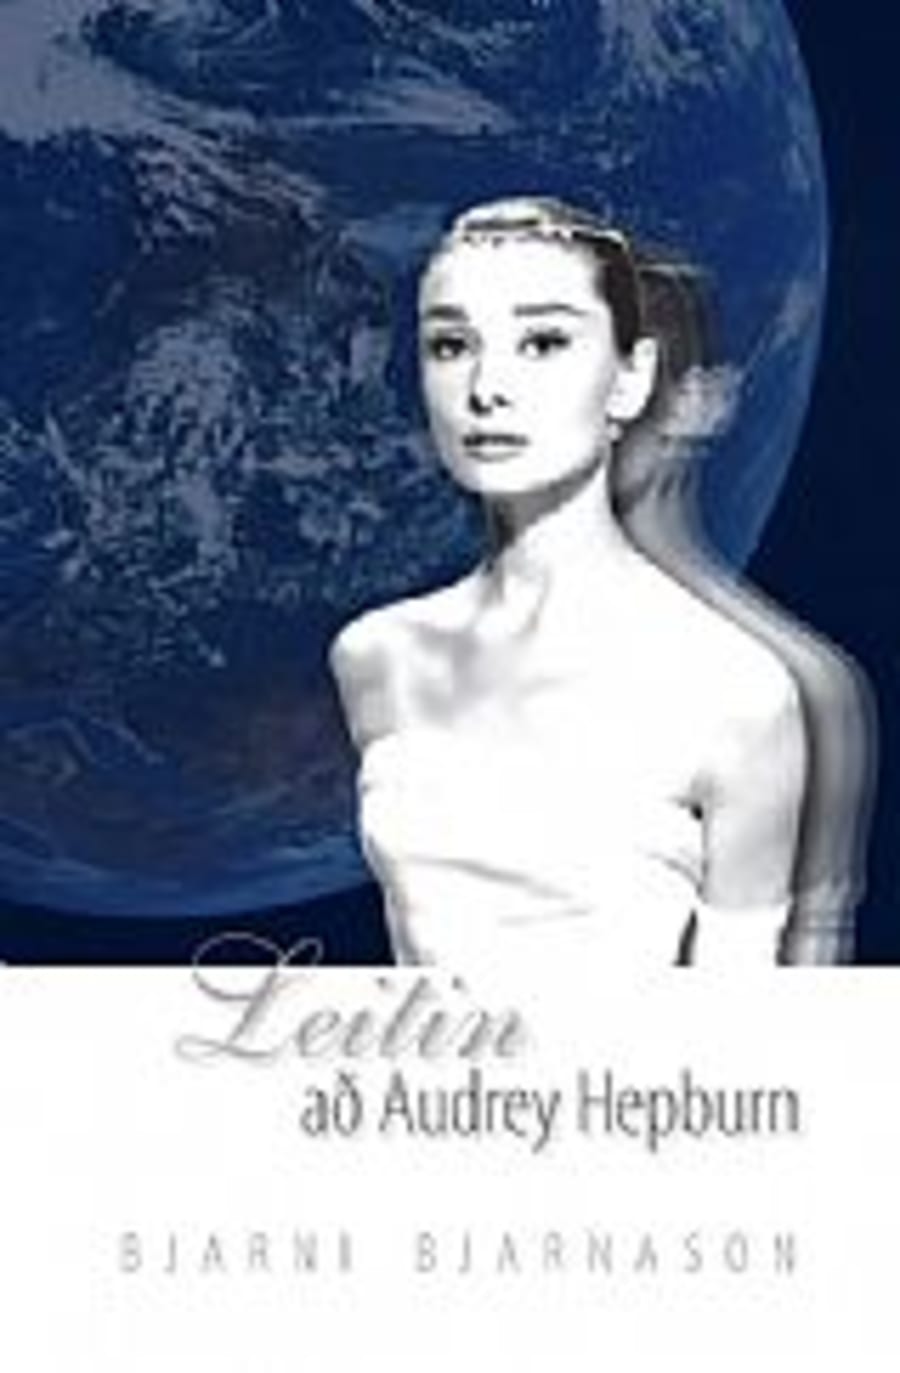 Leitin að Audrey Hepburn